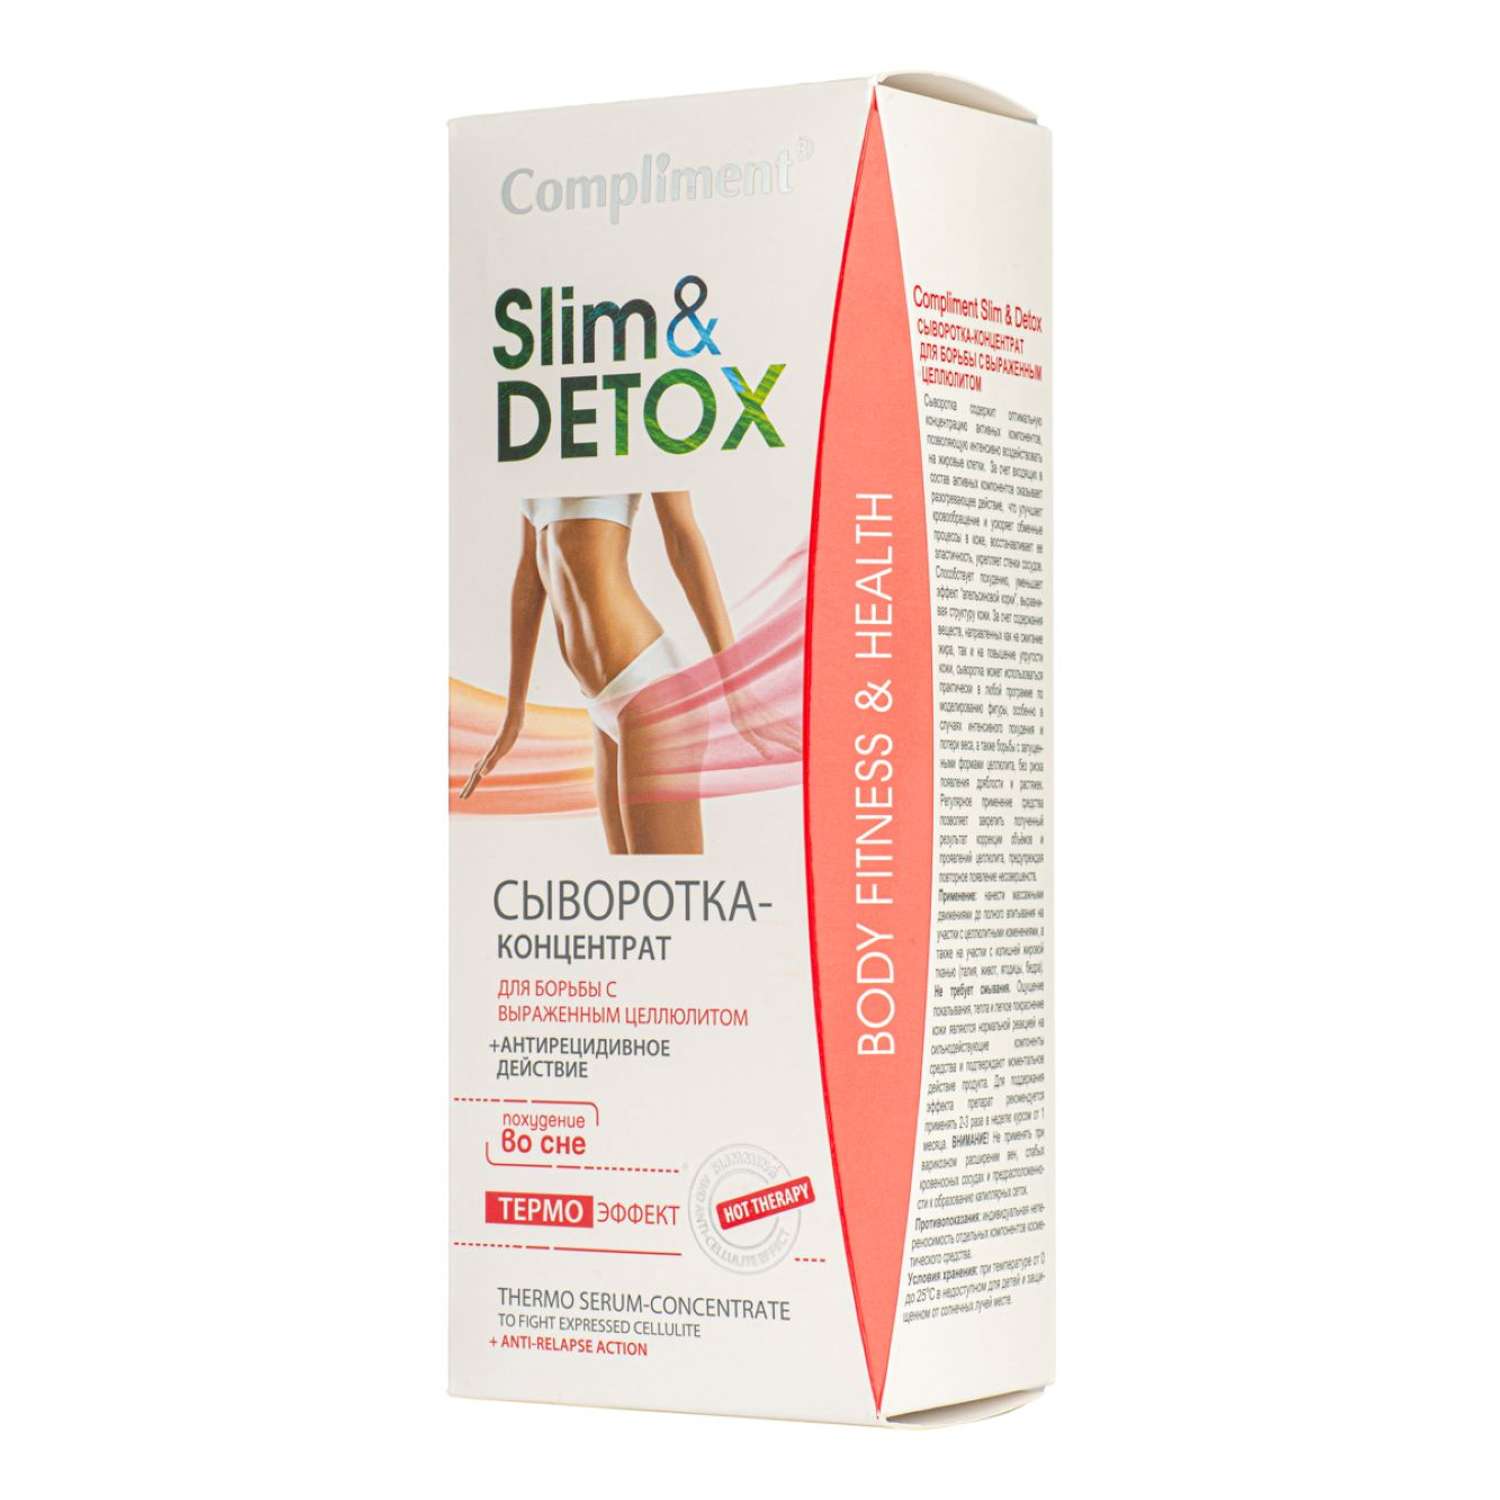 Сыворотка-концентрат Compliment Slim Detox для борьбы с выраженным целлюлитом 200мл - фото 1